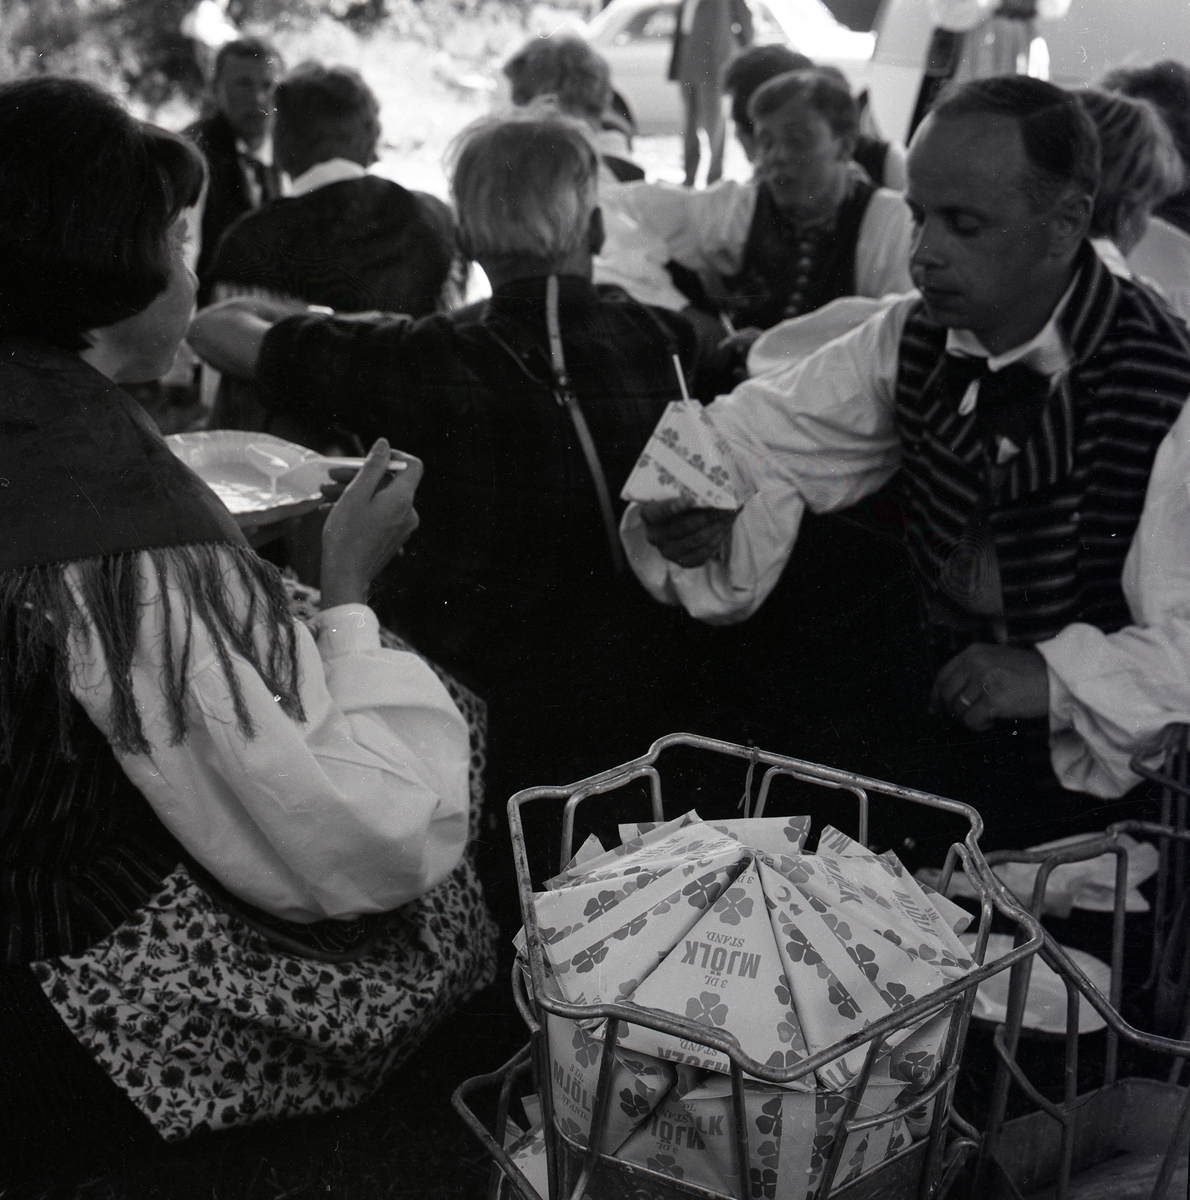 Under en paus i hälsingehambon sitter dansparen i skuggan och äter och dricker, Hårga - Järvsö 1967. Där står hållare av metall med trekantiga mjölktetror.